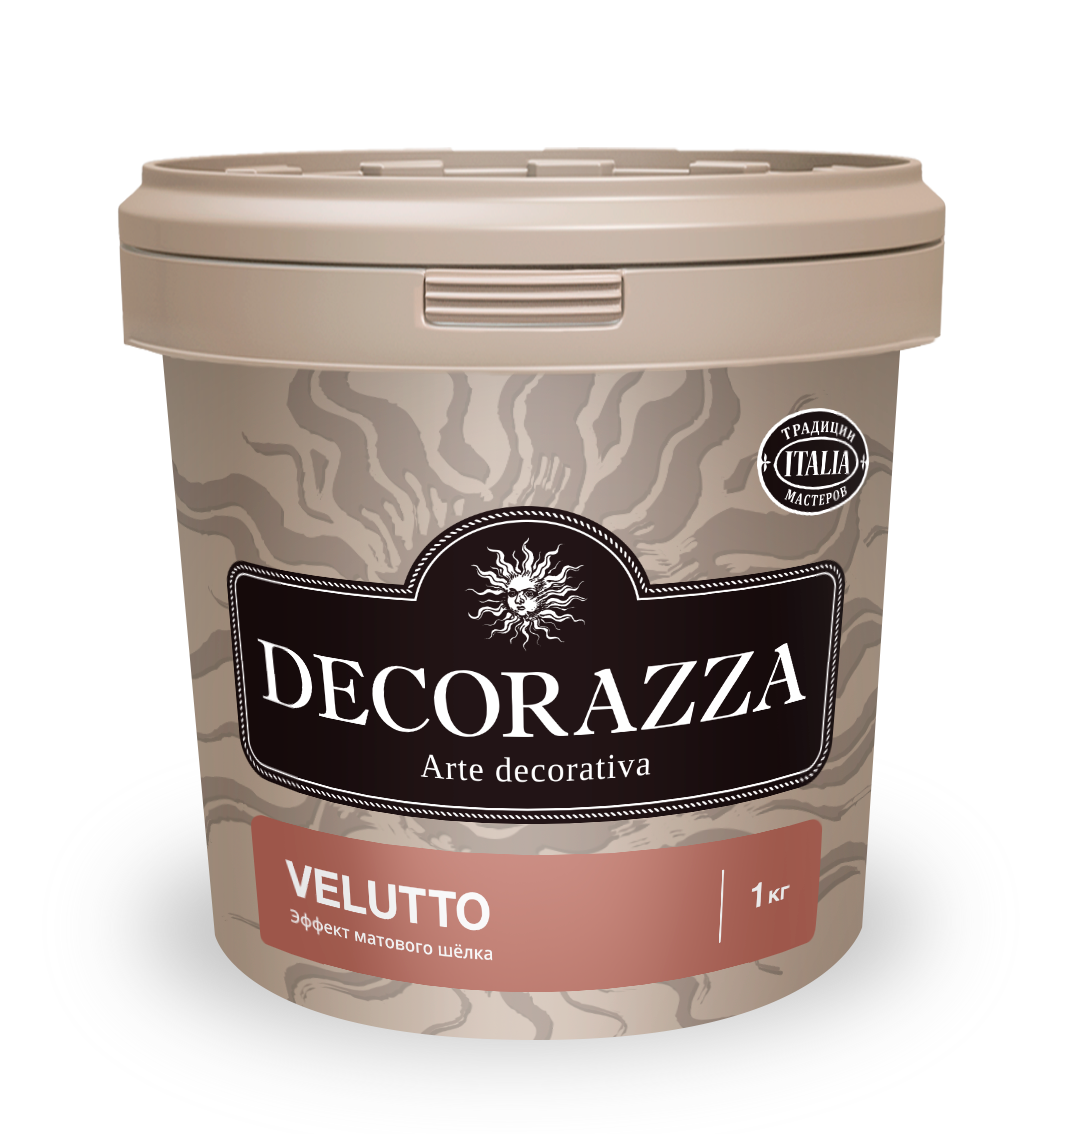 Декоративная штукатурка Decorazza Velluto VT 001, 1 кг декоративная краска decorazza